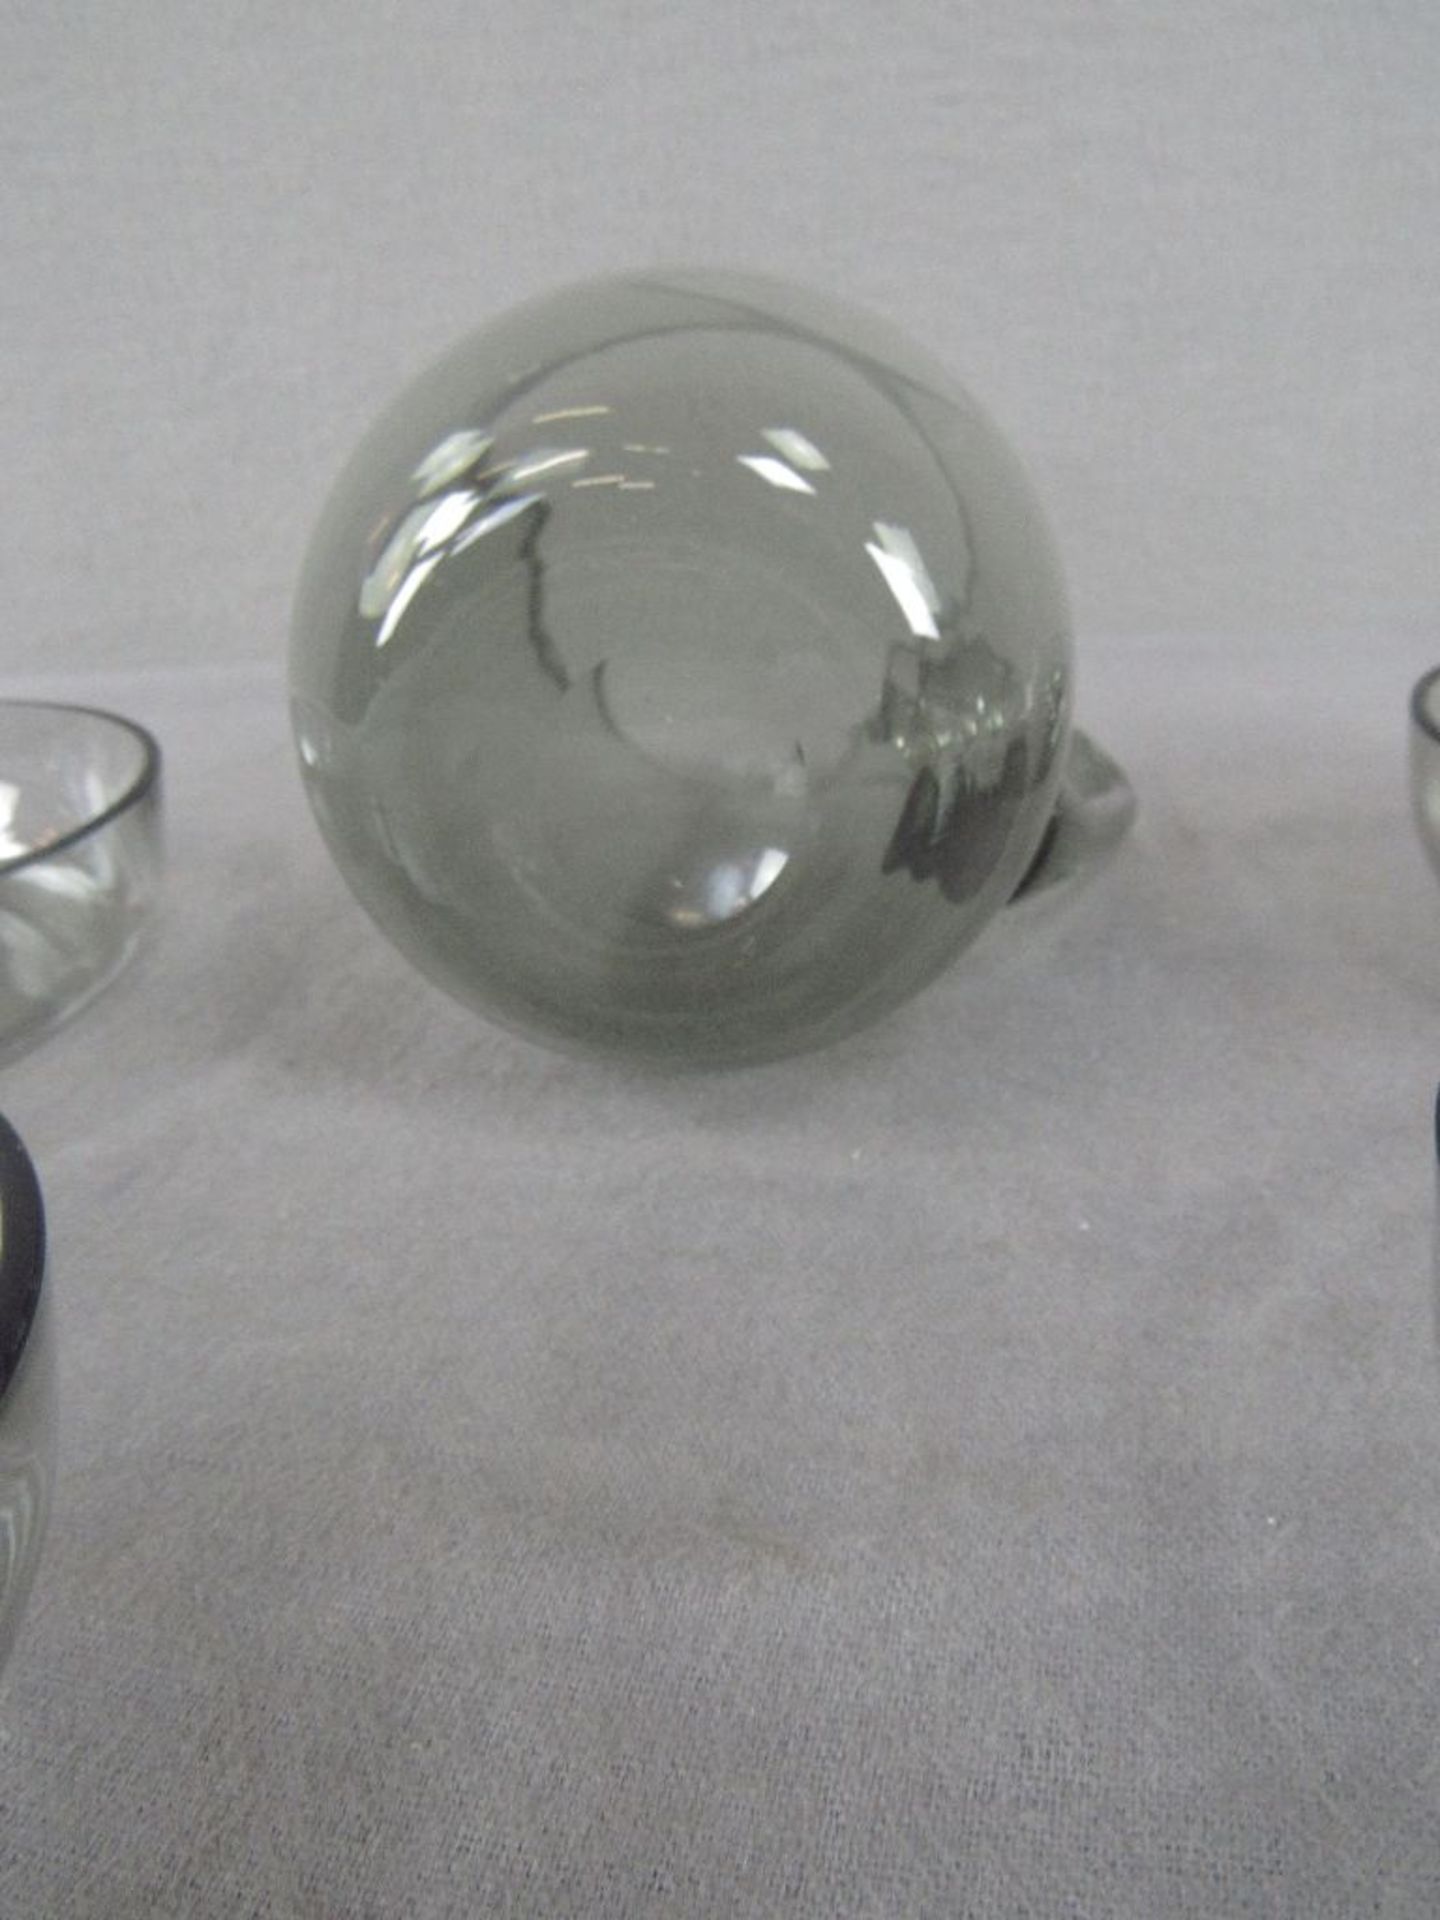 Glasset evtl Wagenfeld Rauchglas Kanne und Schälchen teilweise bestoßen - Image 4 of 4